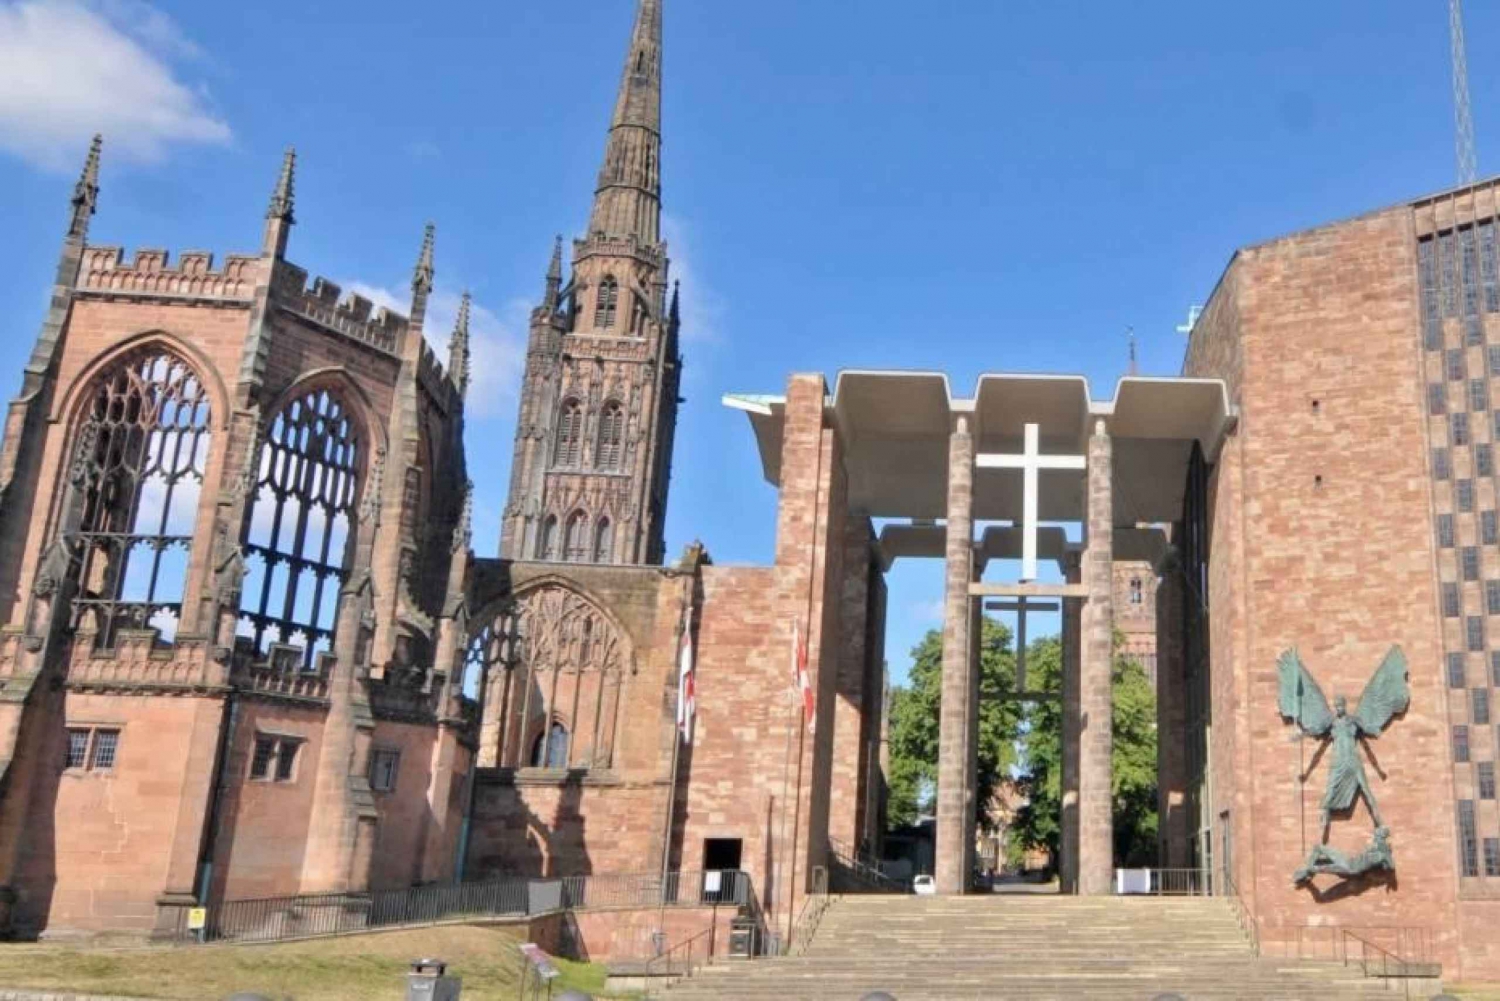 En selvguidet rundtur i Coventrys katedralkvarter